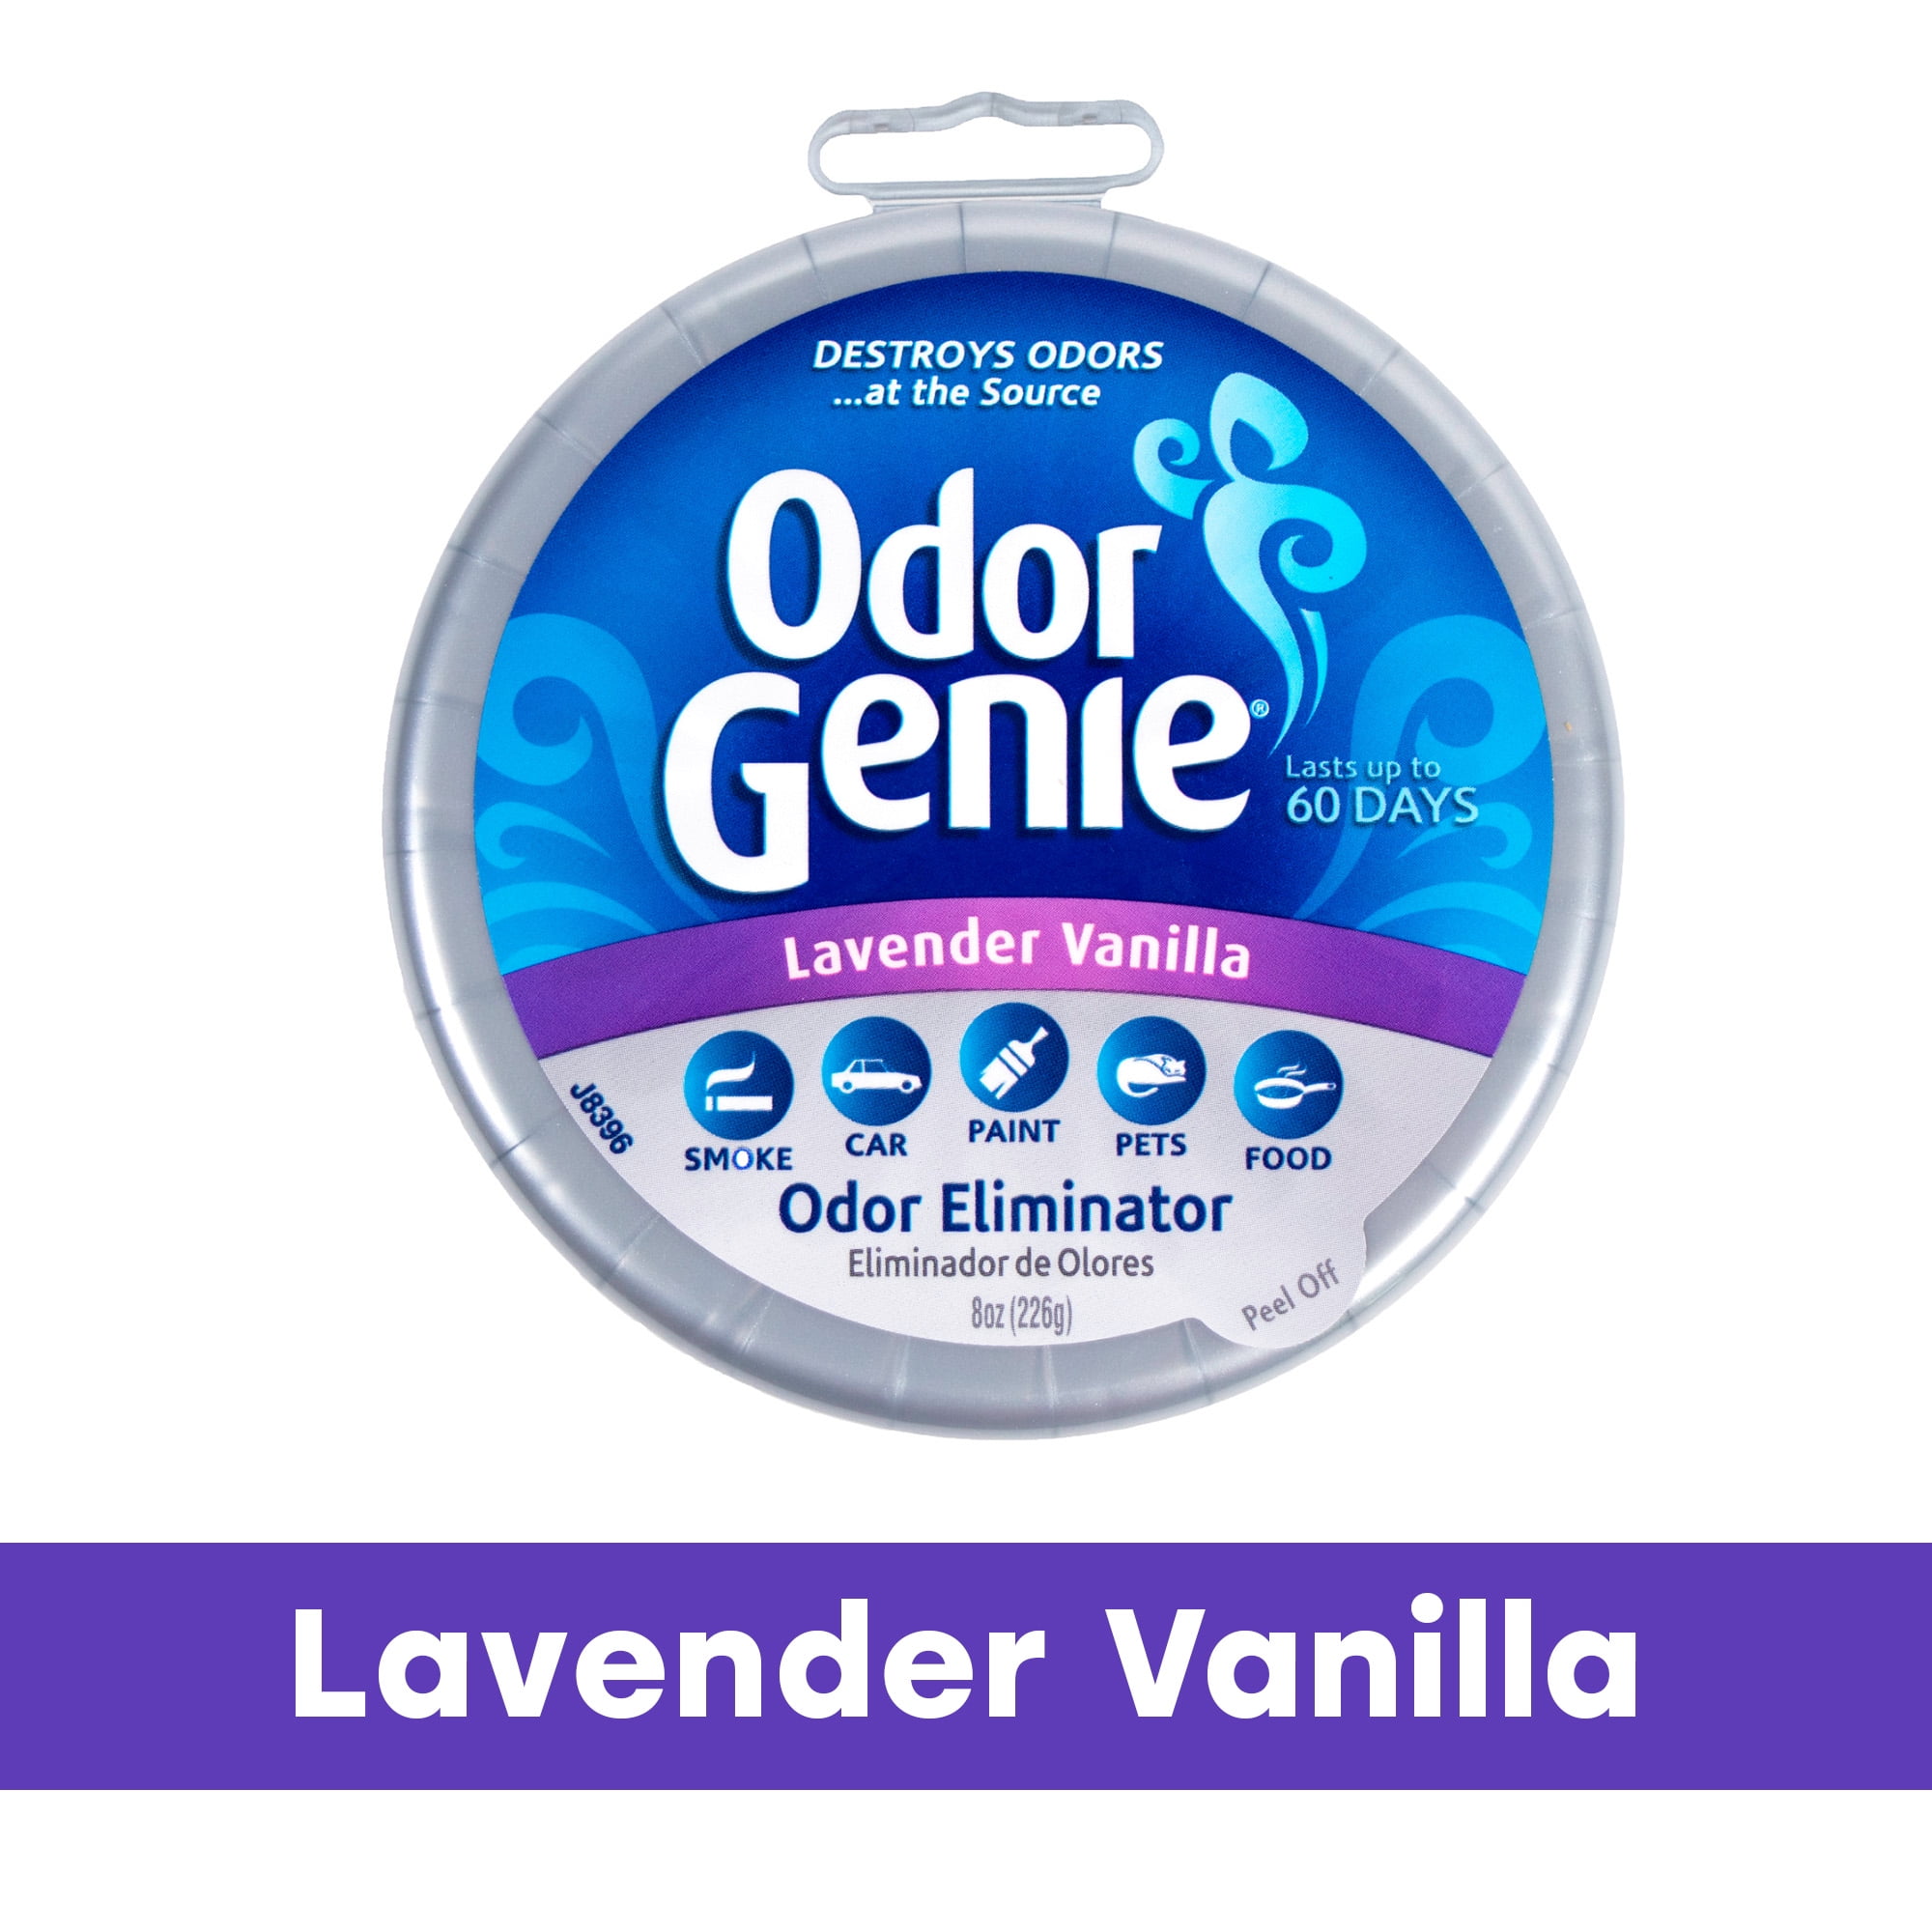 Odor Genie Odor Eliminator with Lavender Vanilla Fragrance, 8 oz.